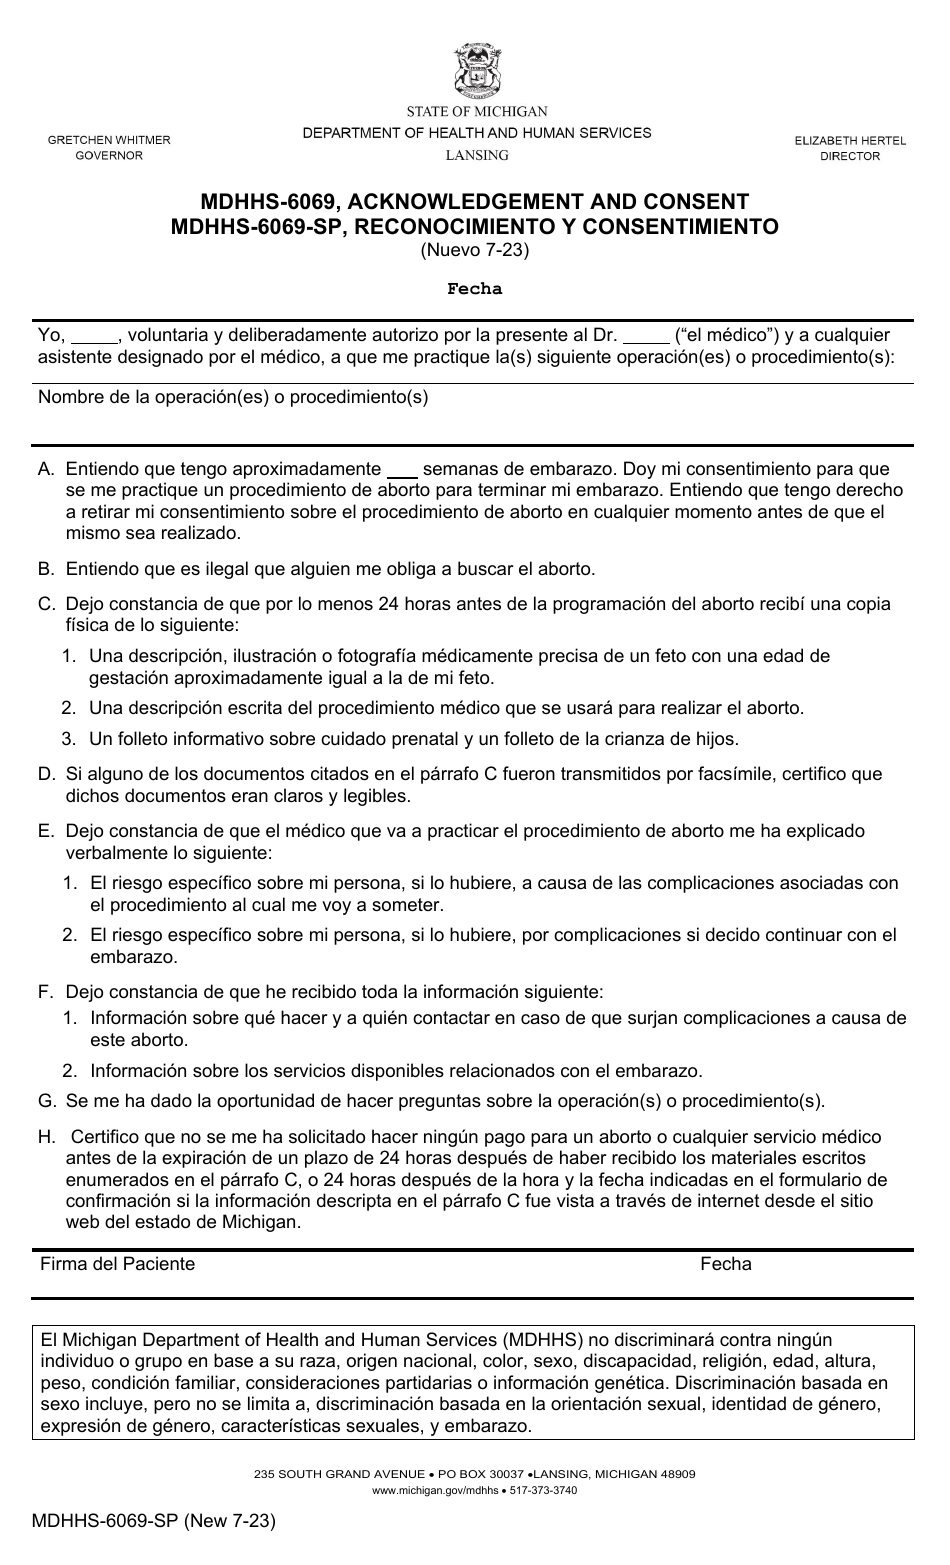 Formulario MDHHS-6069-SP Reconocimiento Y Consentimiento - Michigan (Spanish), Page 1